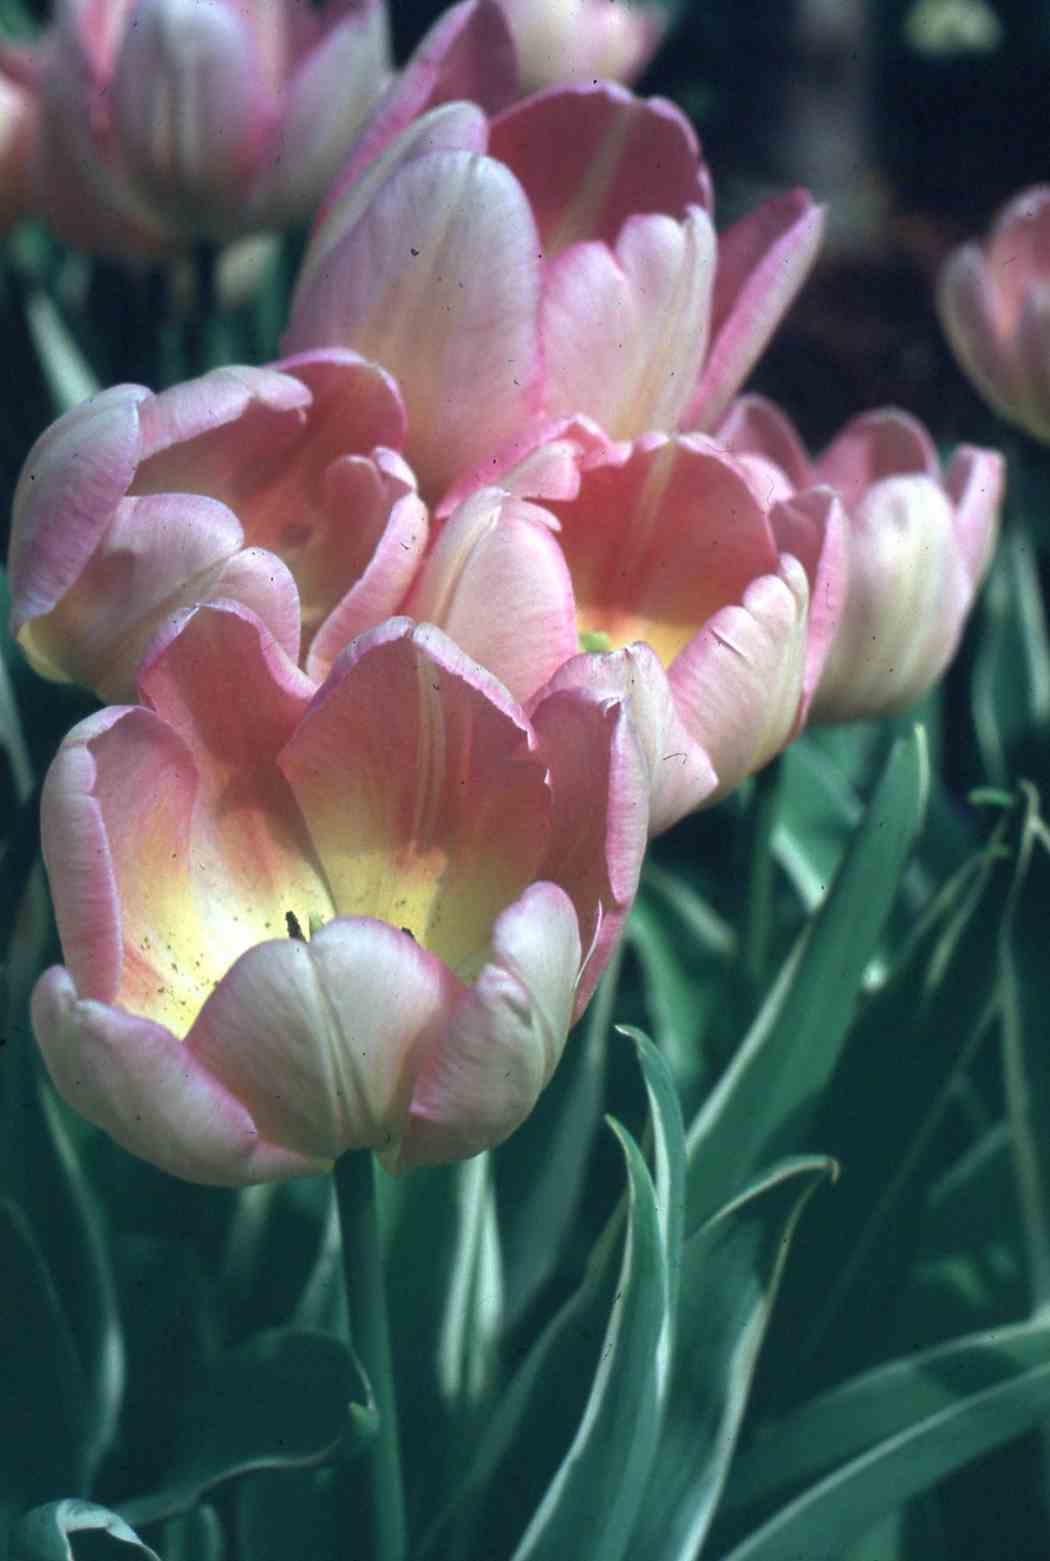 Spring Flower Show 1992: Plantasia